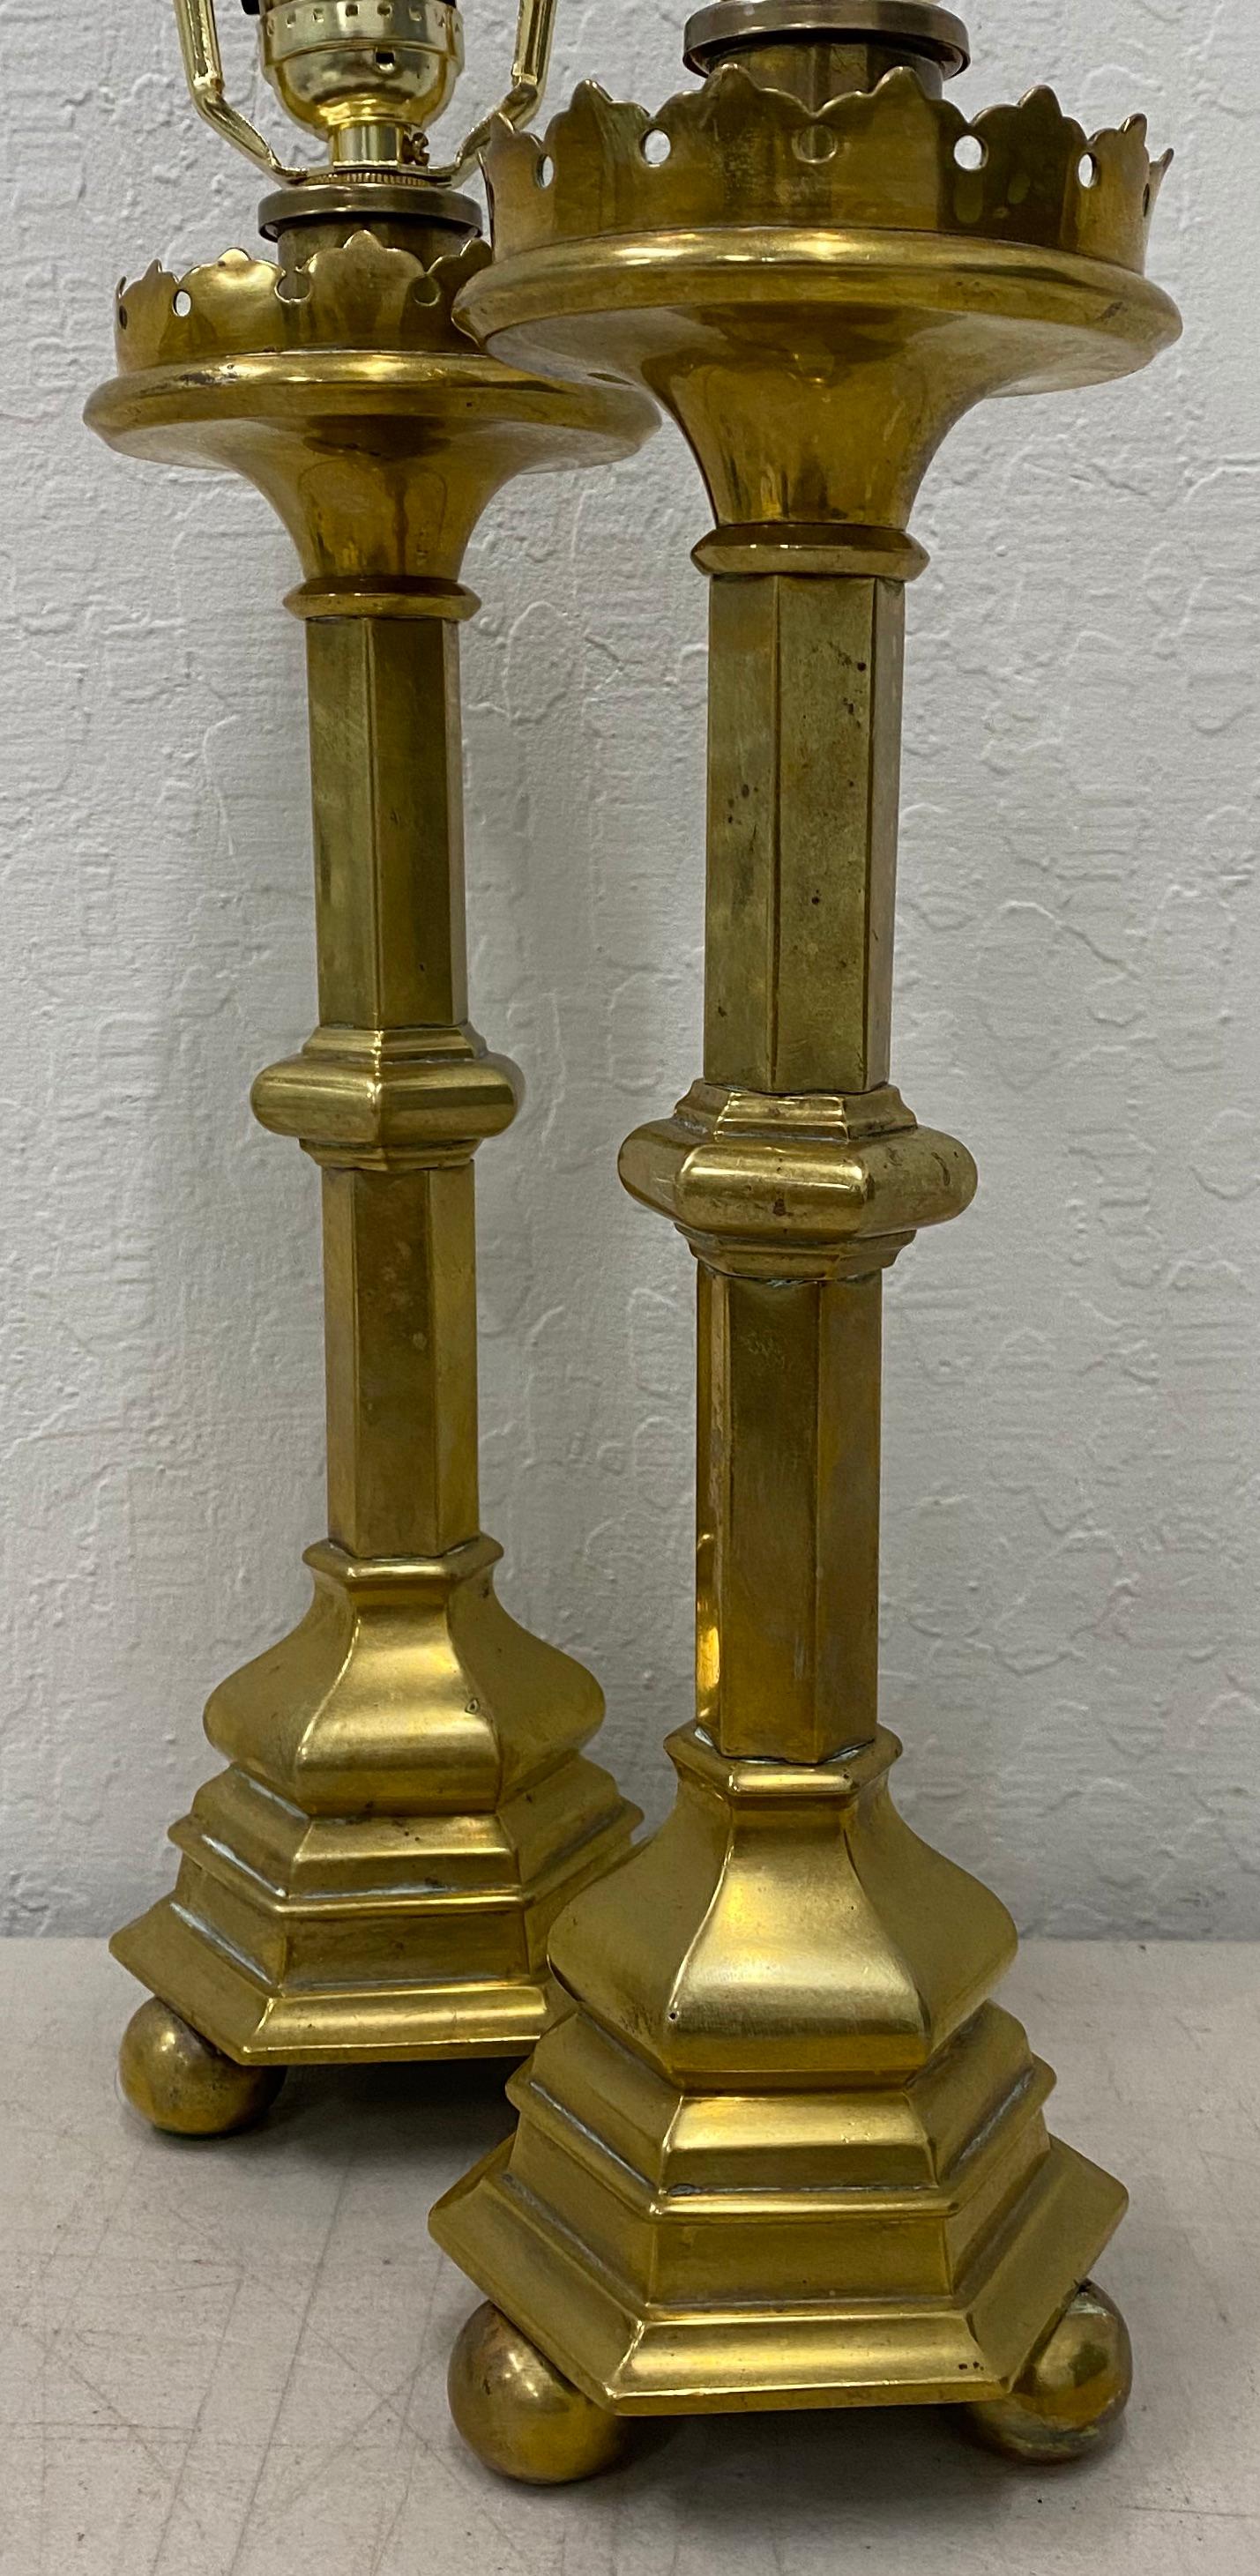 Messing-Öllampen aus der Mitte des 19. Jahrhunderts, die zu Tischlampen umfunktioniert wurden

Maße: 4